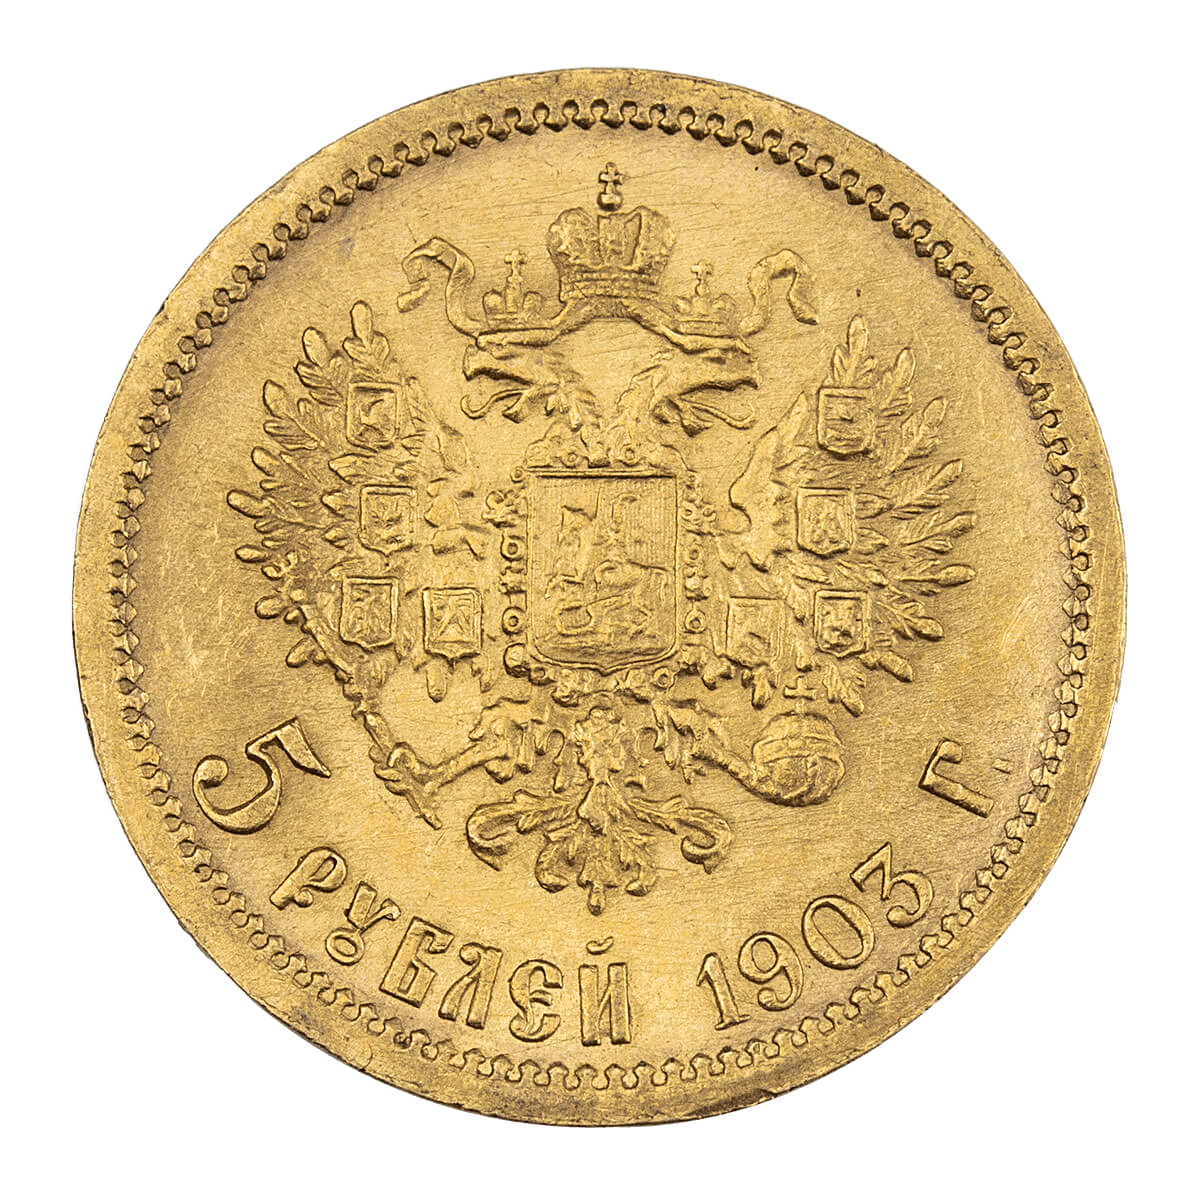 Złota moneta 5 rubli rosyjskich, różne roczniki